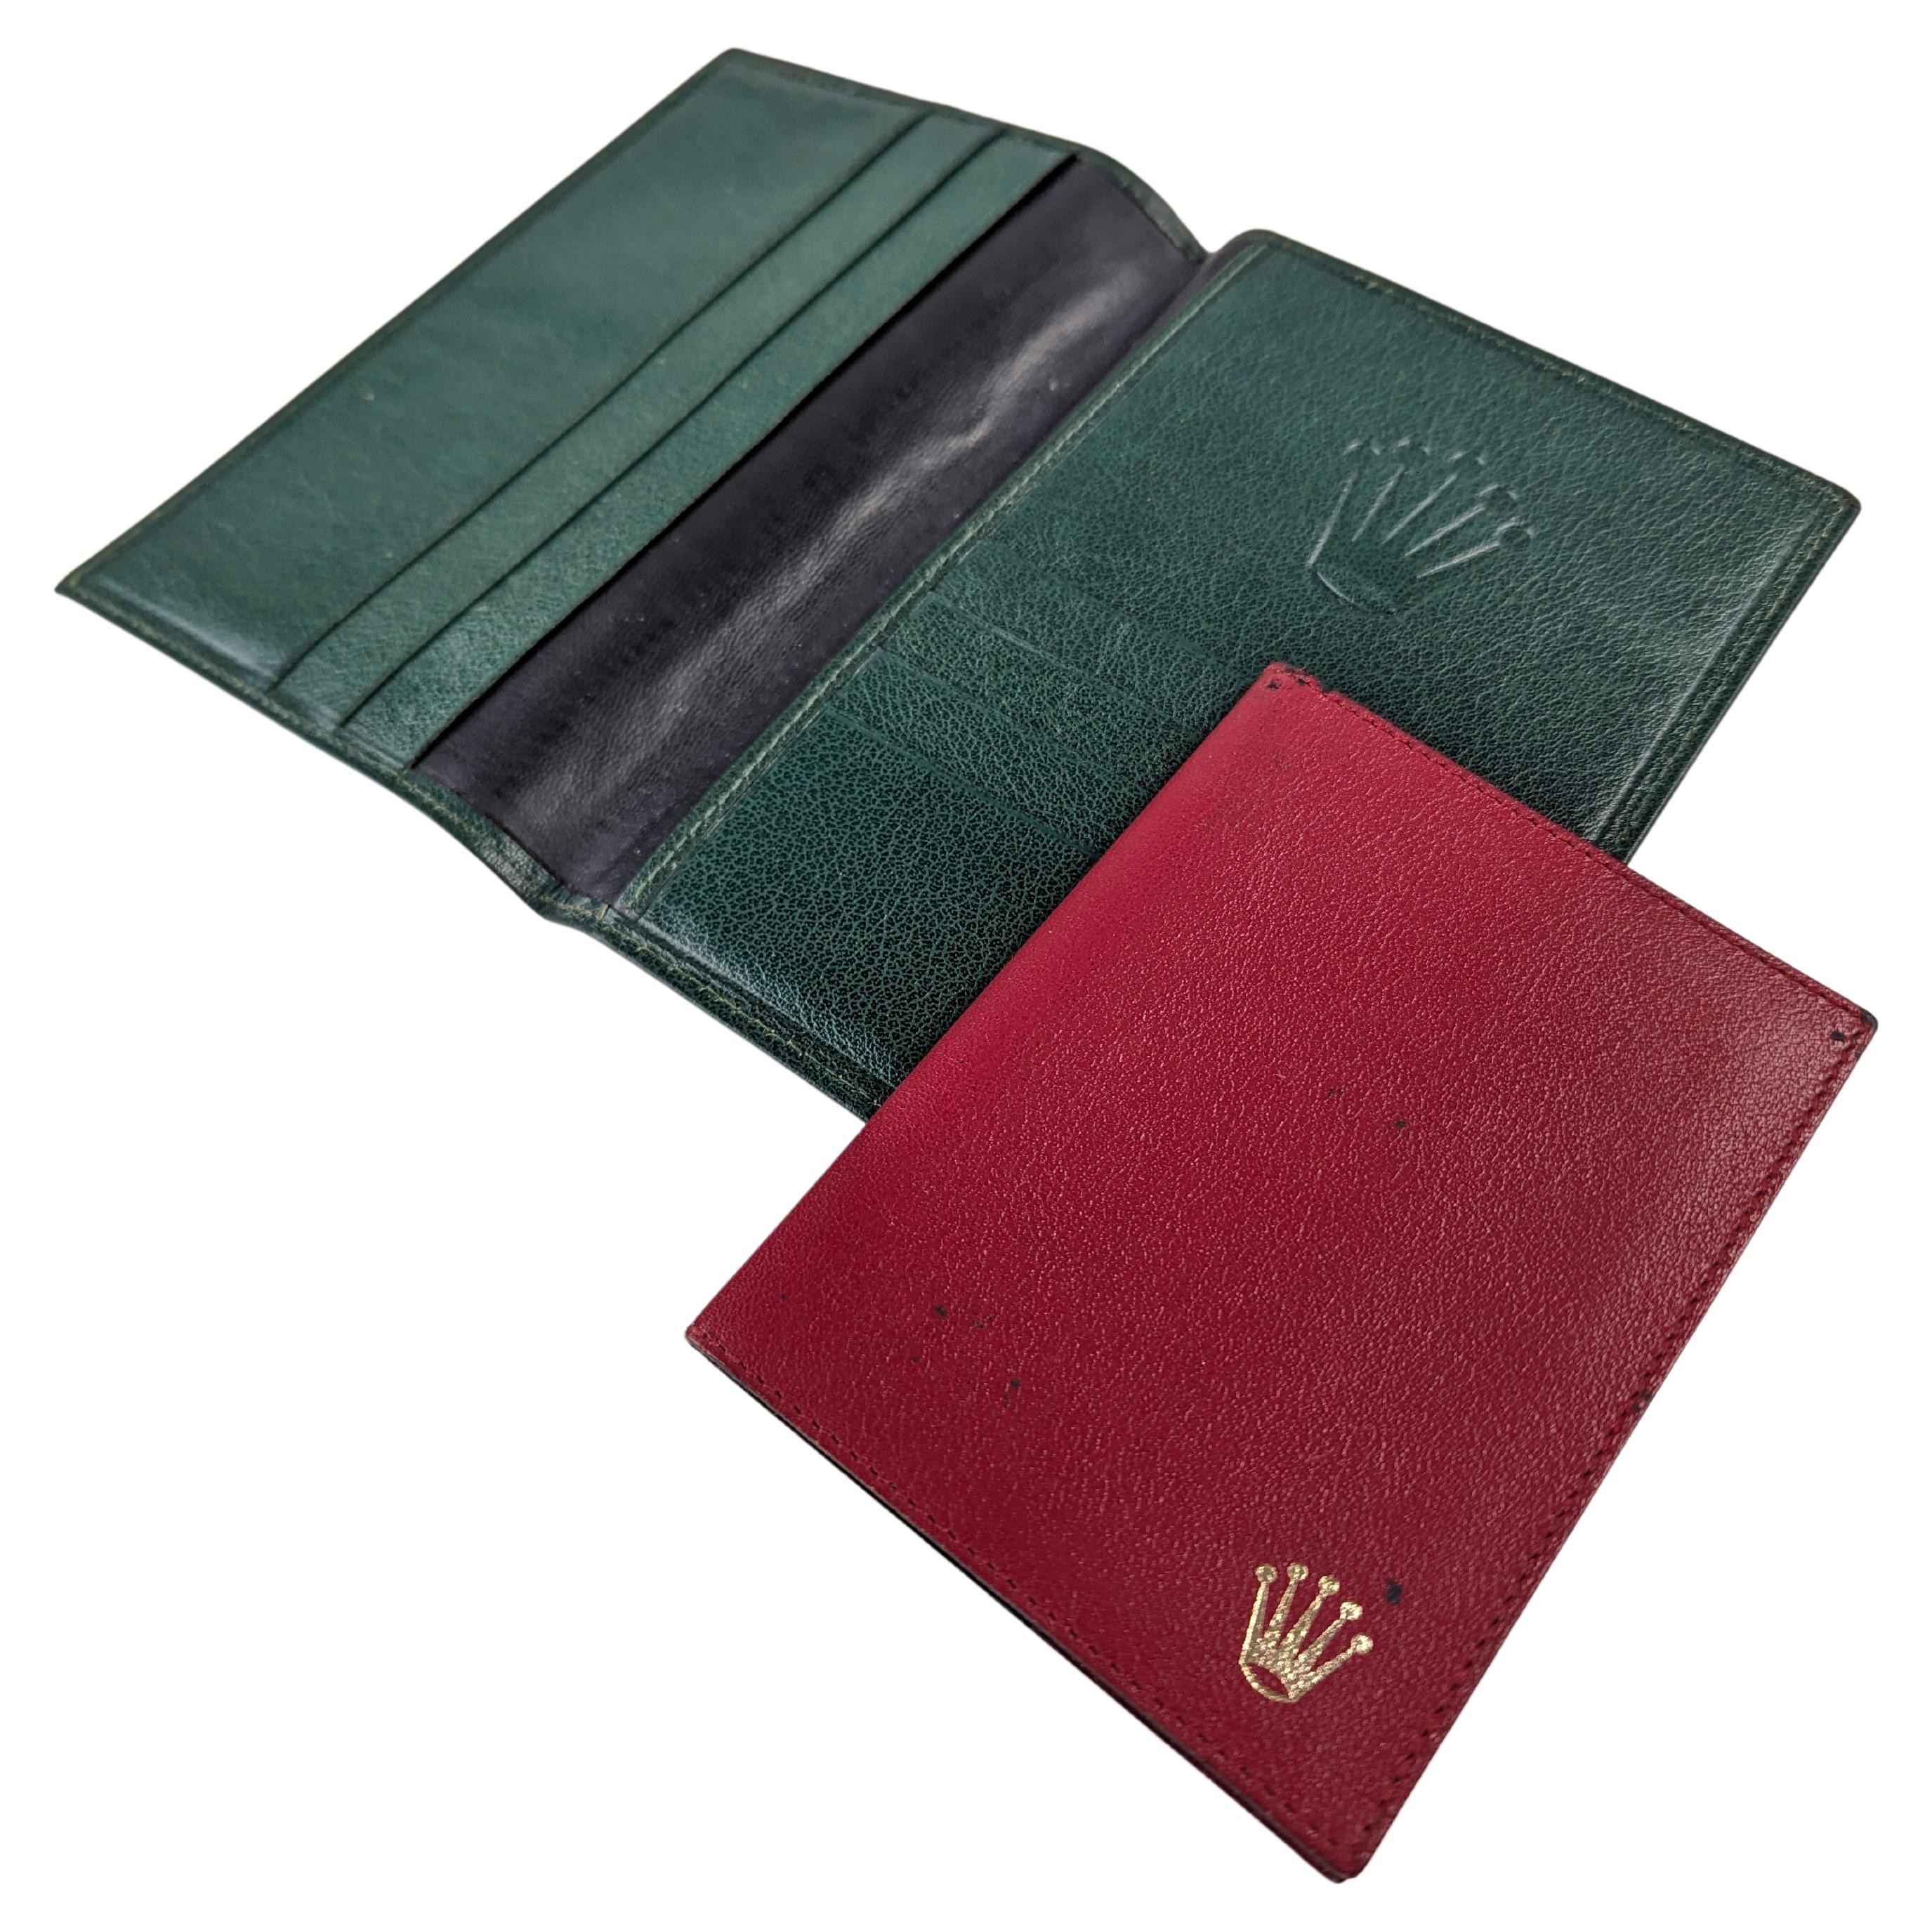 Rolex Brieftasche und Reisepass aus grünem und rotem Leder